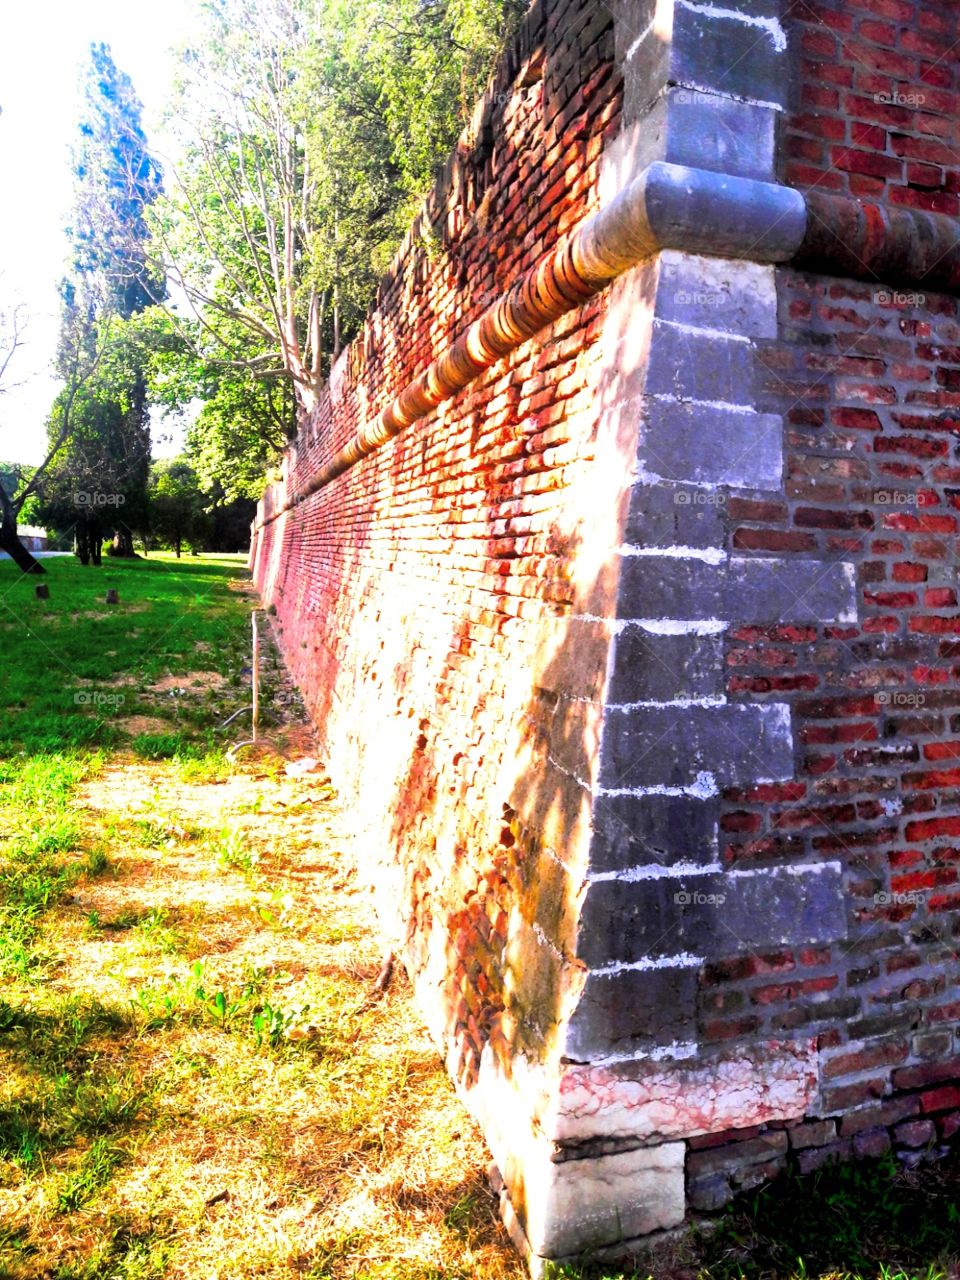 walls of Ferrara